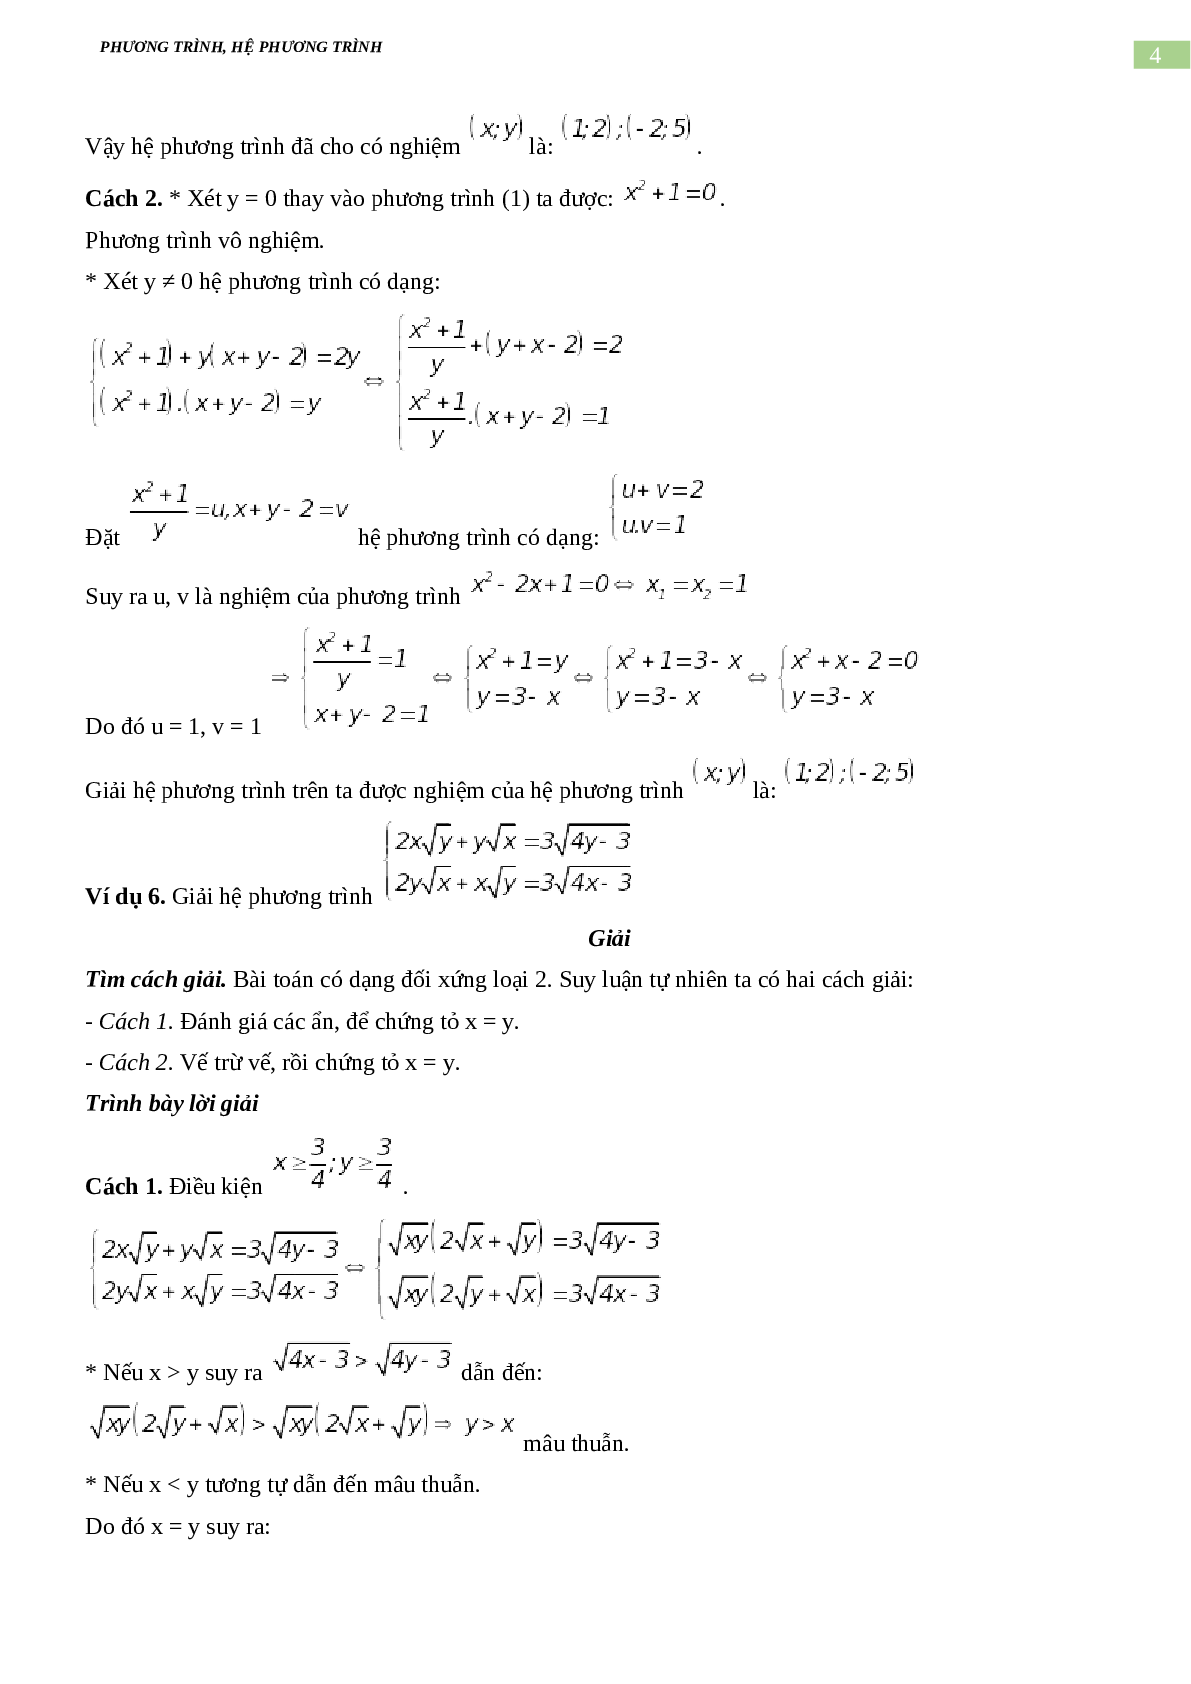 Bài tập về phương trình, hệ phương trình, bất phương trình không mẫu mực có đáp án, chọn lọc (trang 4)